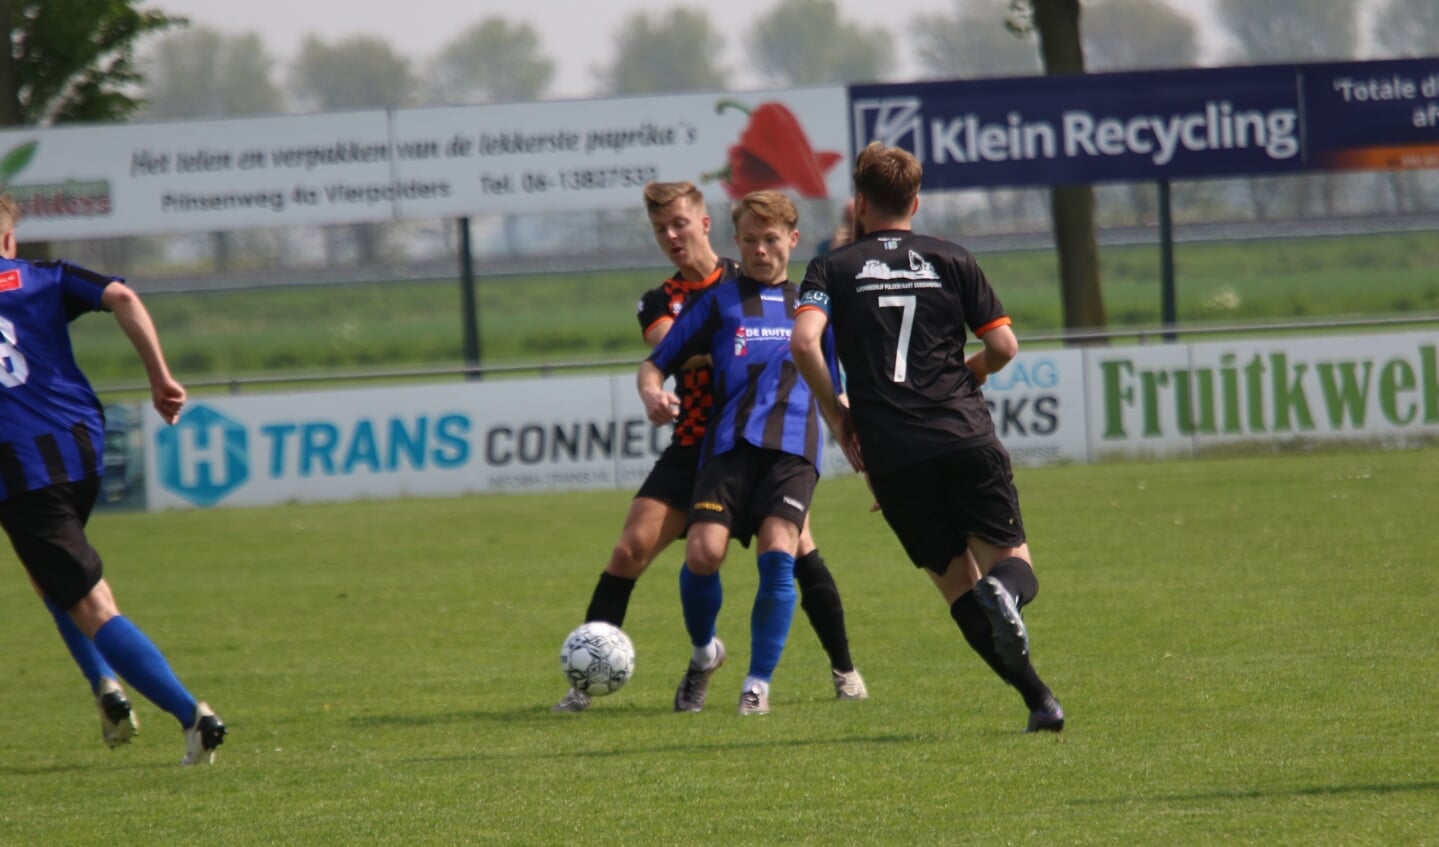 Floris van den Heuvel opende de score voor Vierpolders in de bekerwedstrijd tegen Duindorp. (Archieffoto: Wil van Balen).